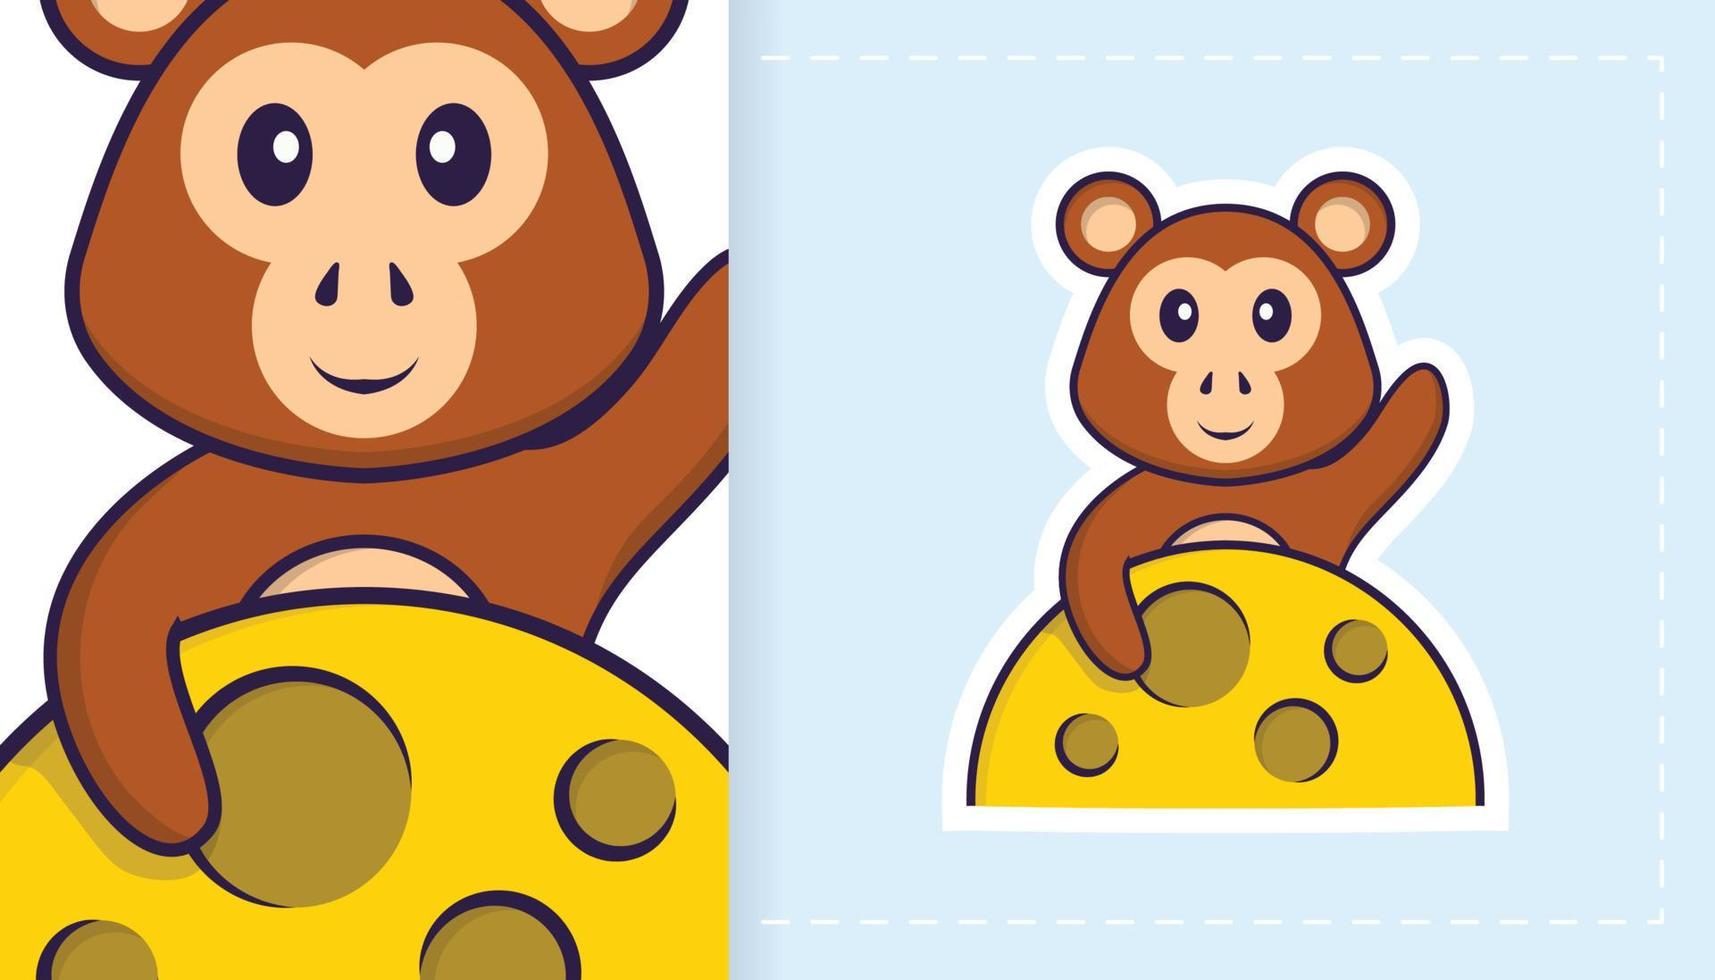 schattig aap mascotte karakter. kan worden gebruikt voor stickers, patches, textiel, papier. vector illustratie